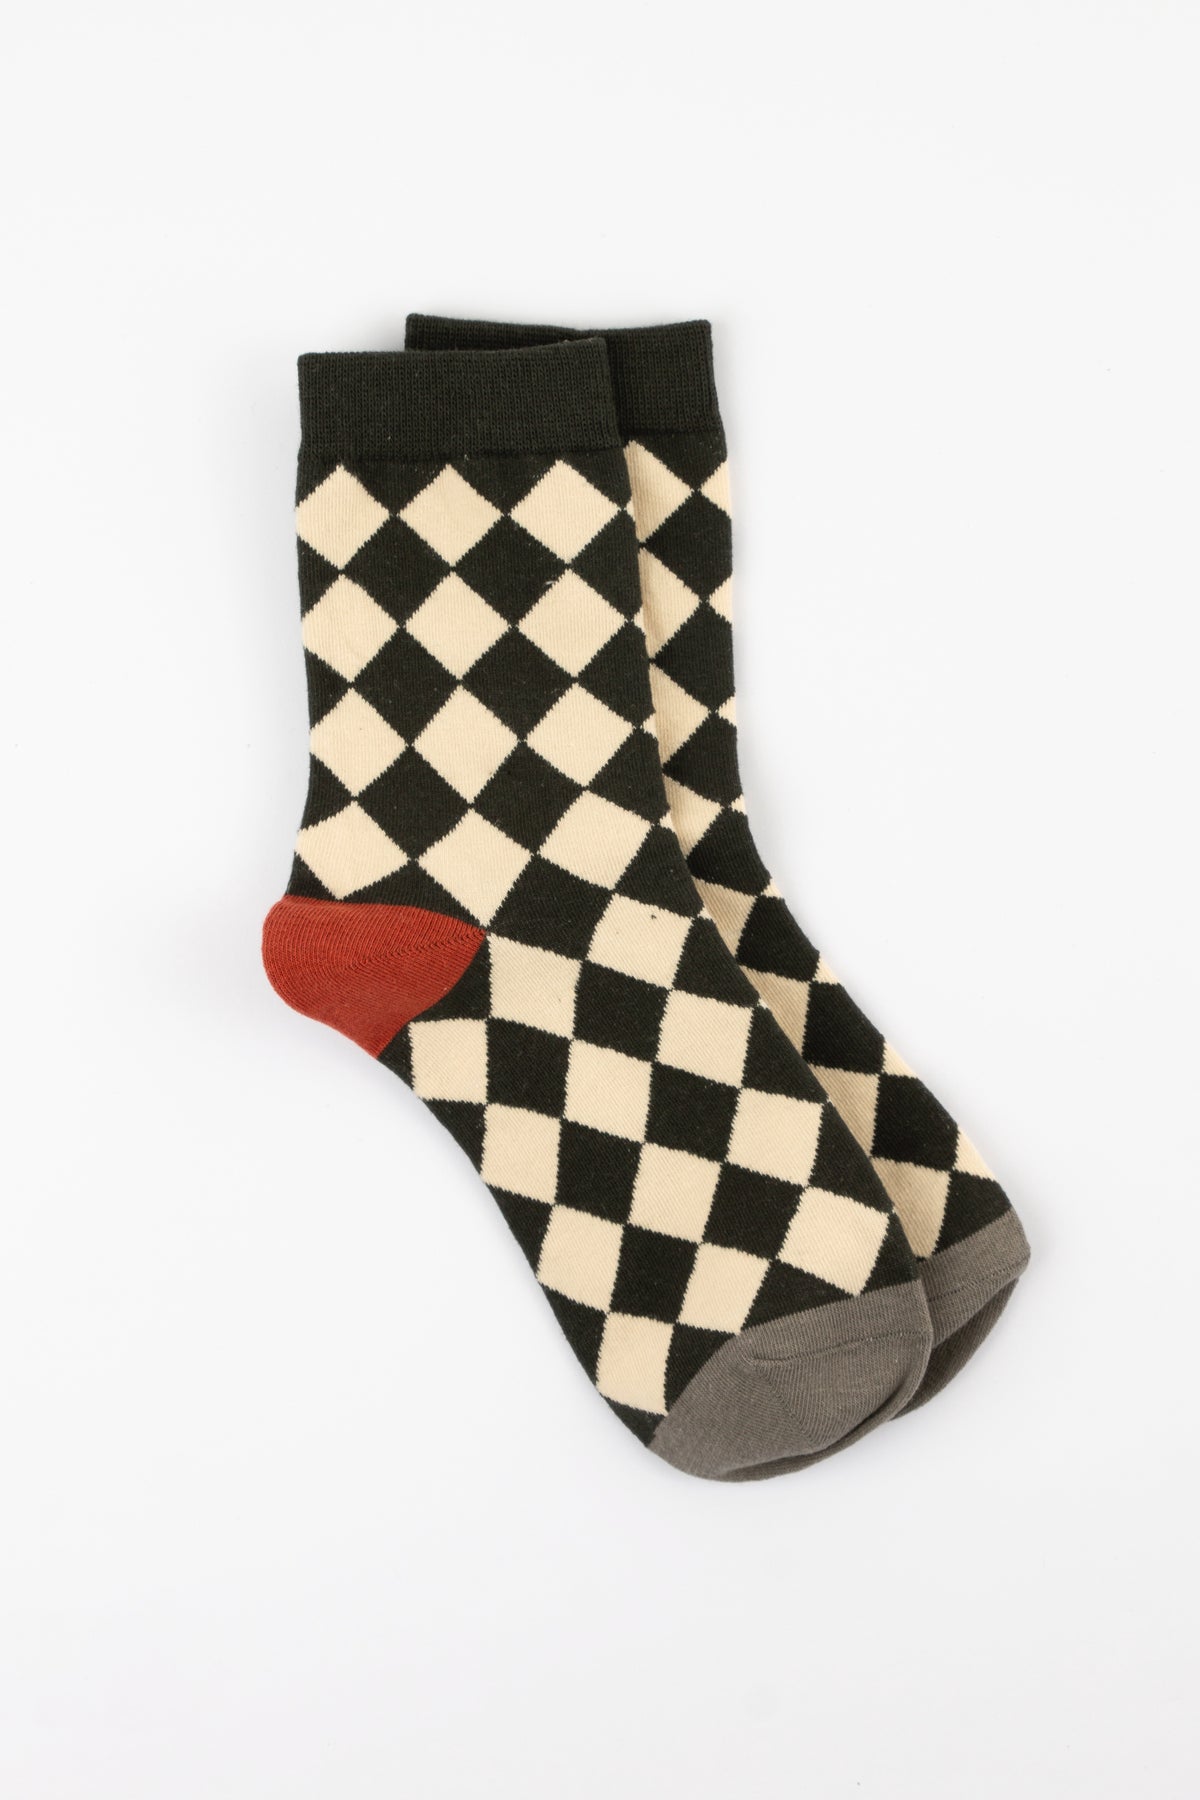 Checkered Board Black And Cream Socks